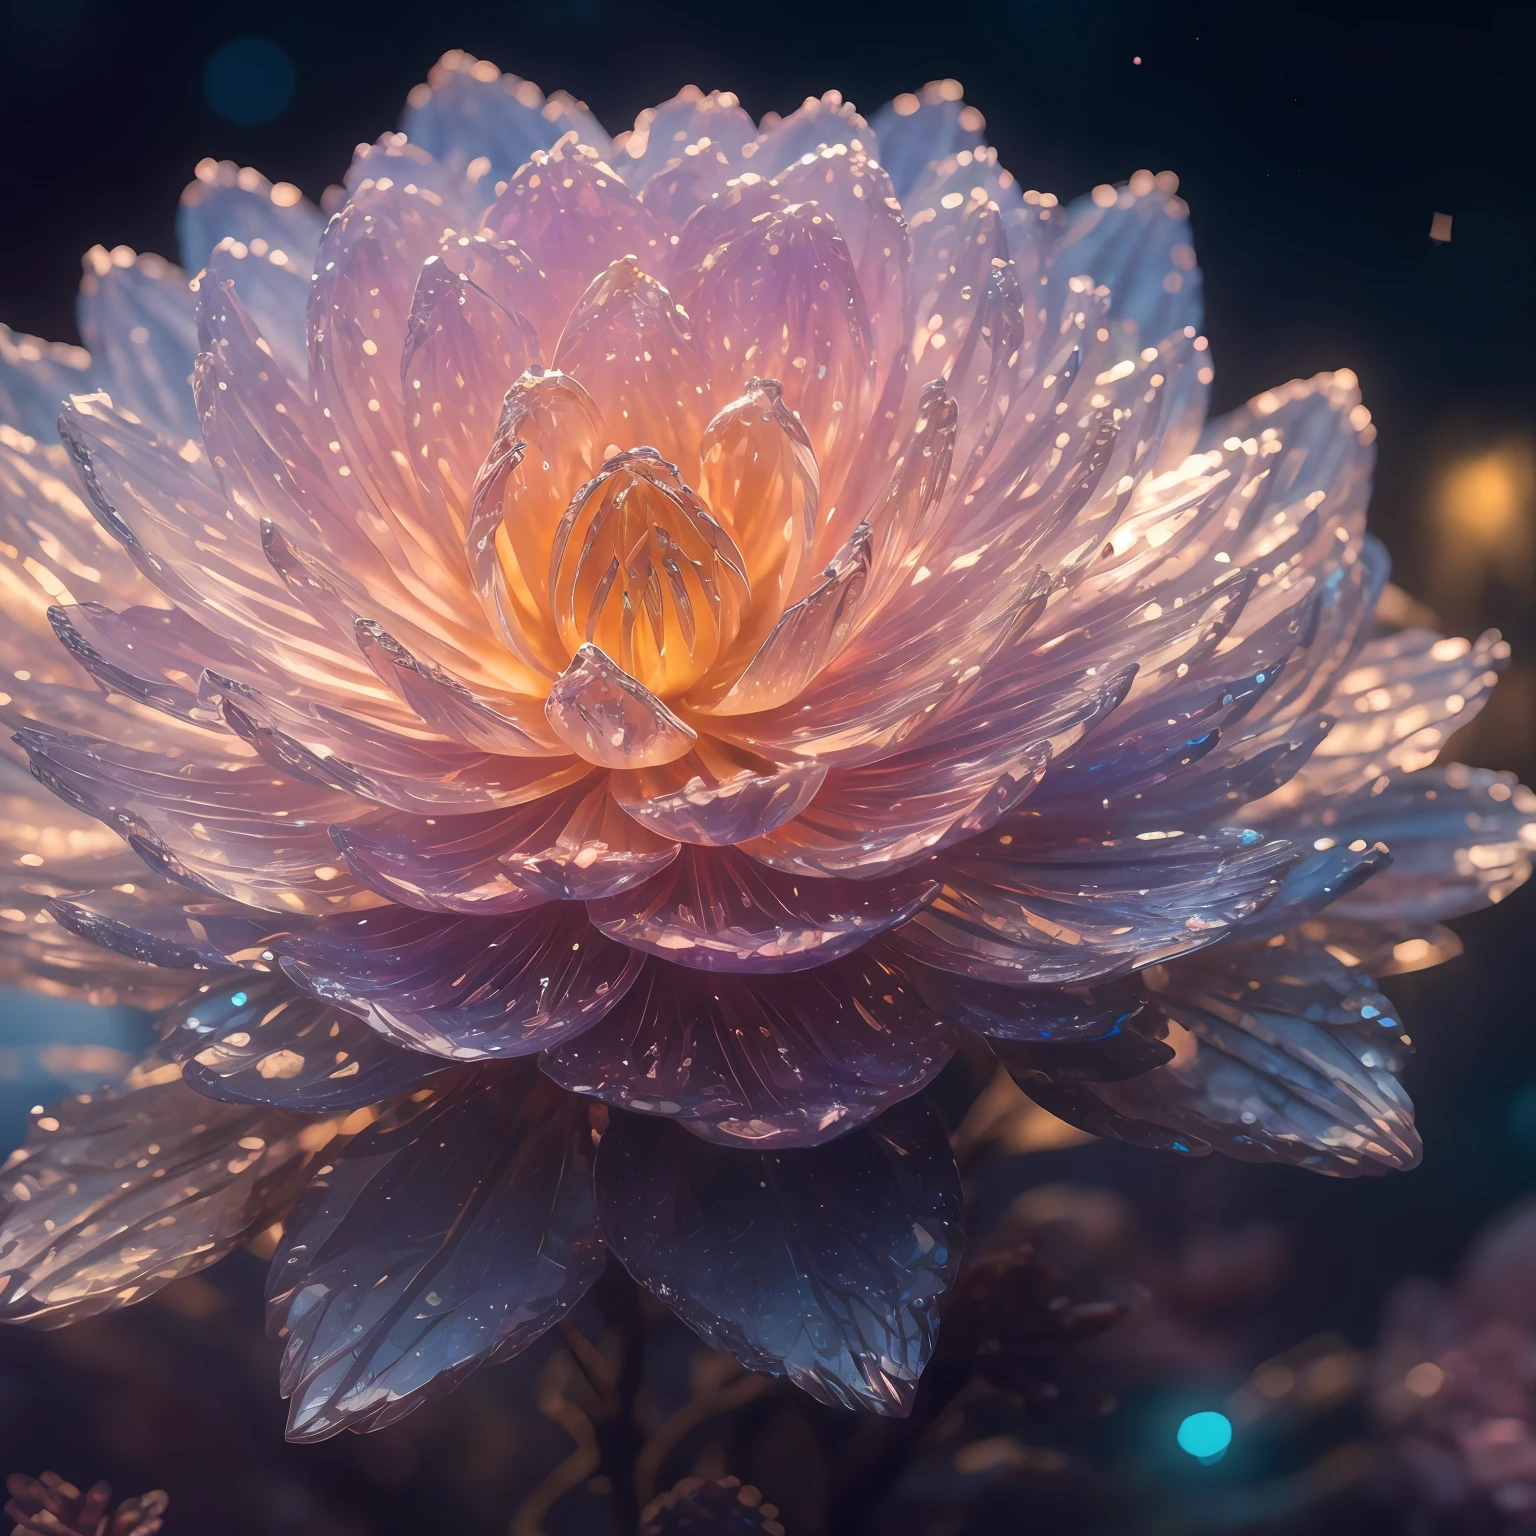 Kristallblüte Blume,
Fantasie, galaxy, transparent, 
shimmering, funkelnd, prächtig, Bunt, 
magische Fotografie, dramatische Beleuchtung, Fotorealismus, ultra-detailliert, 4k, Tiefenschärfe, hohe Auflösung